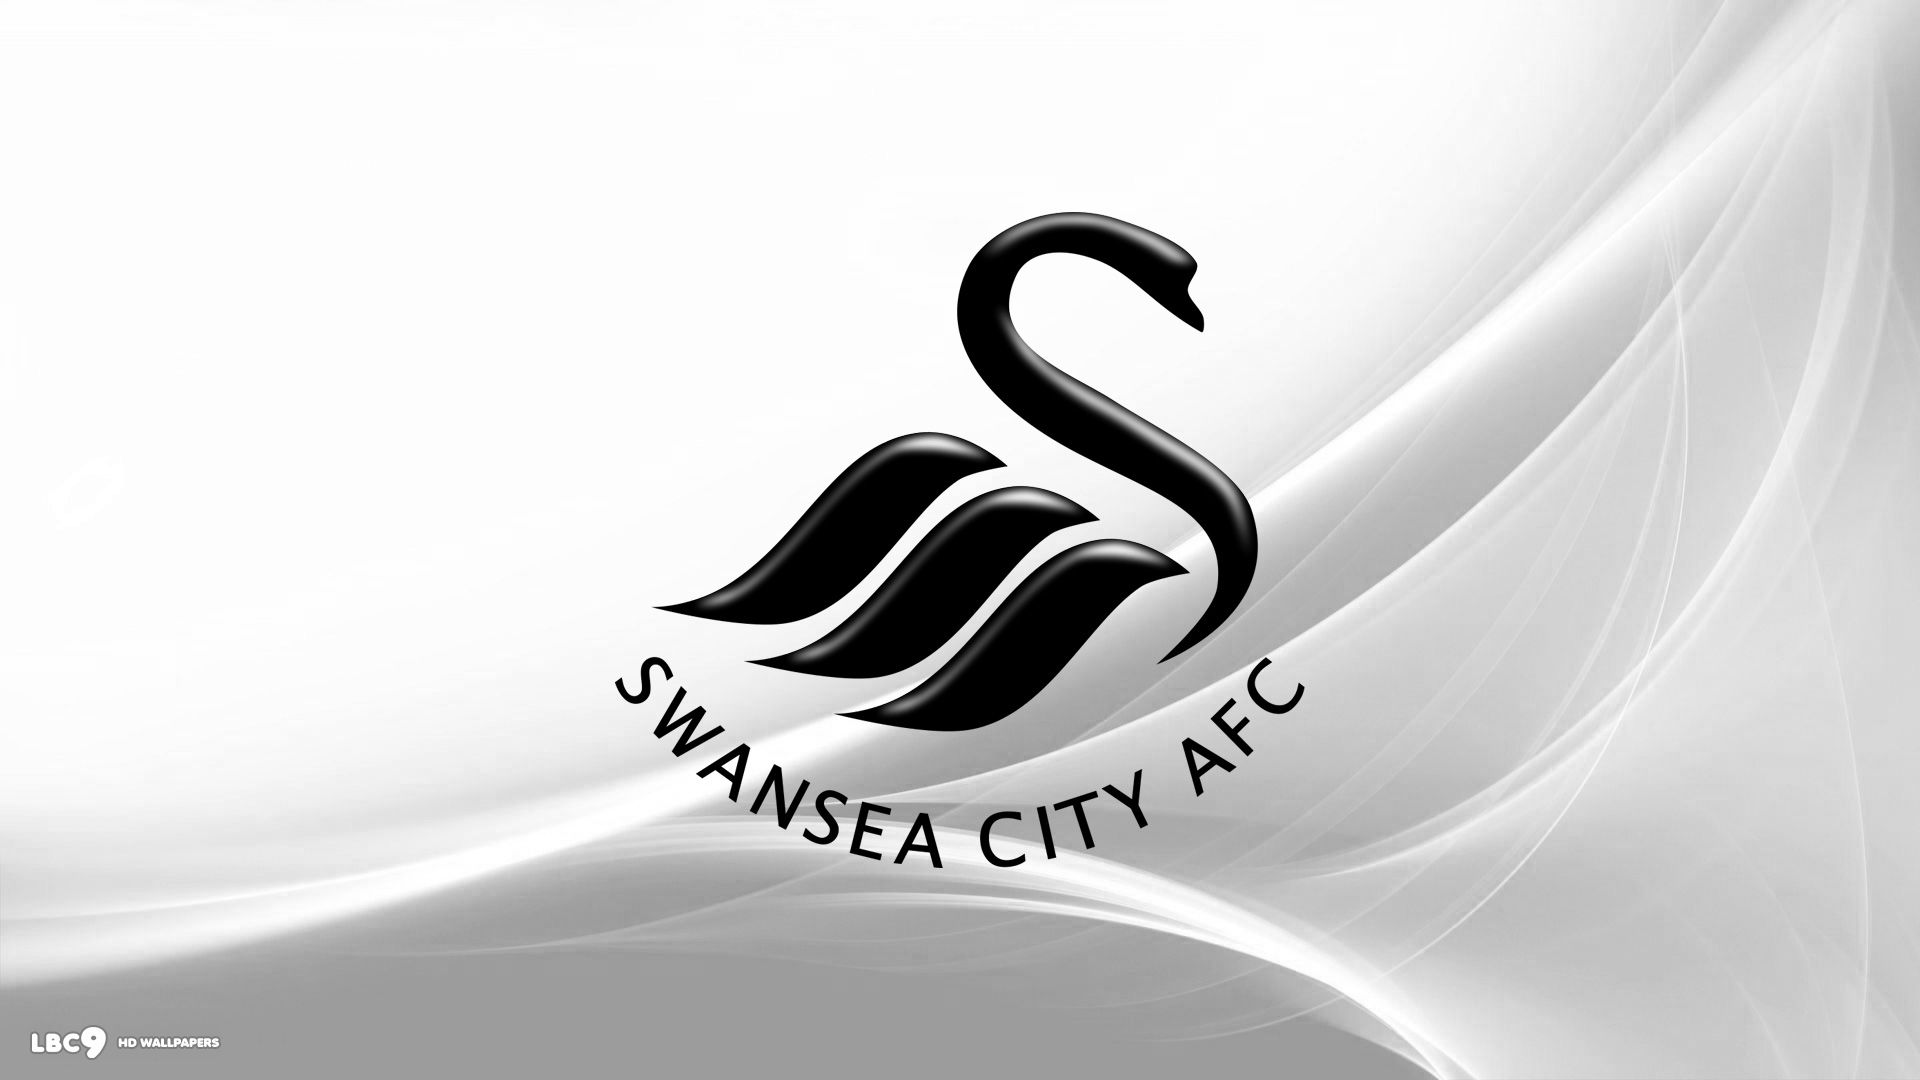 Swansea Vs Notts County , HD Wallpaper & Backgrounds